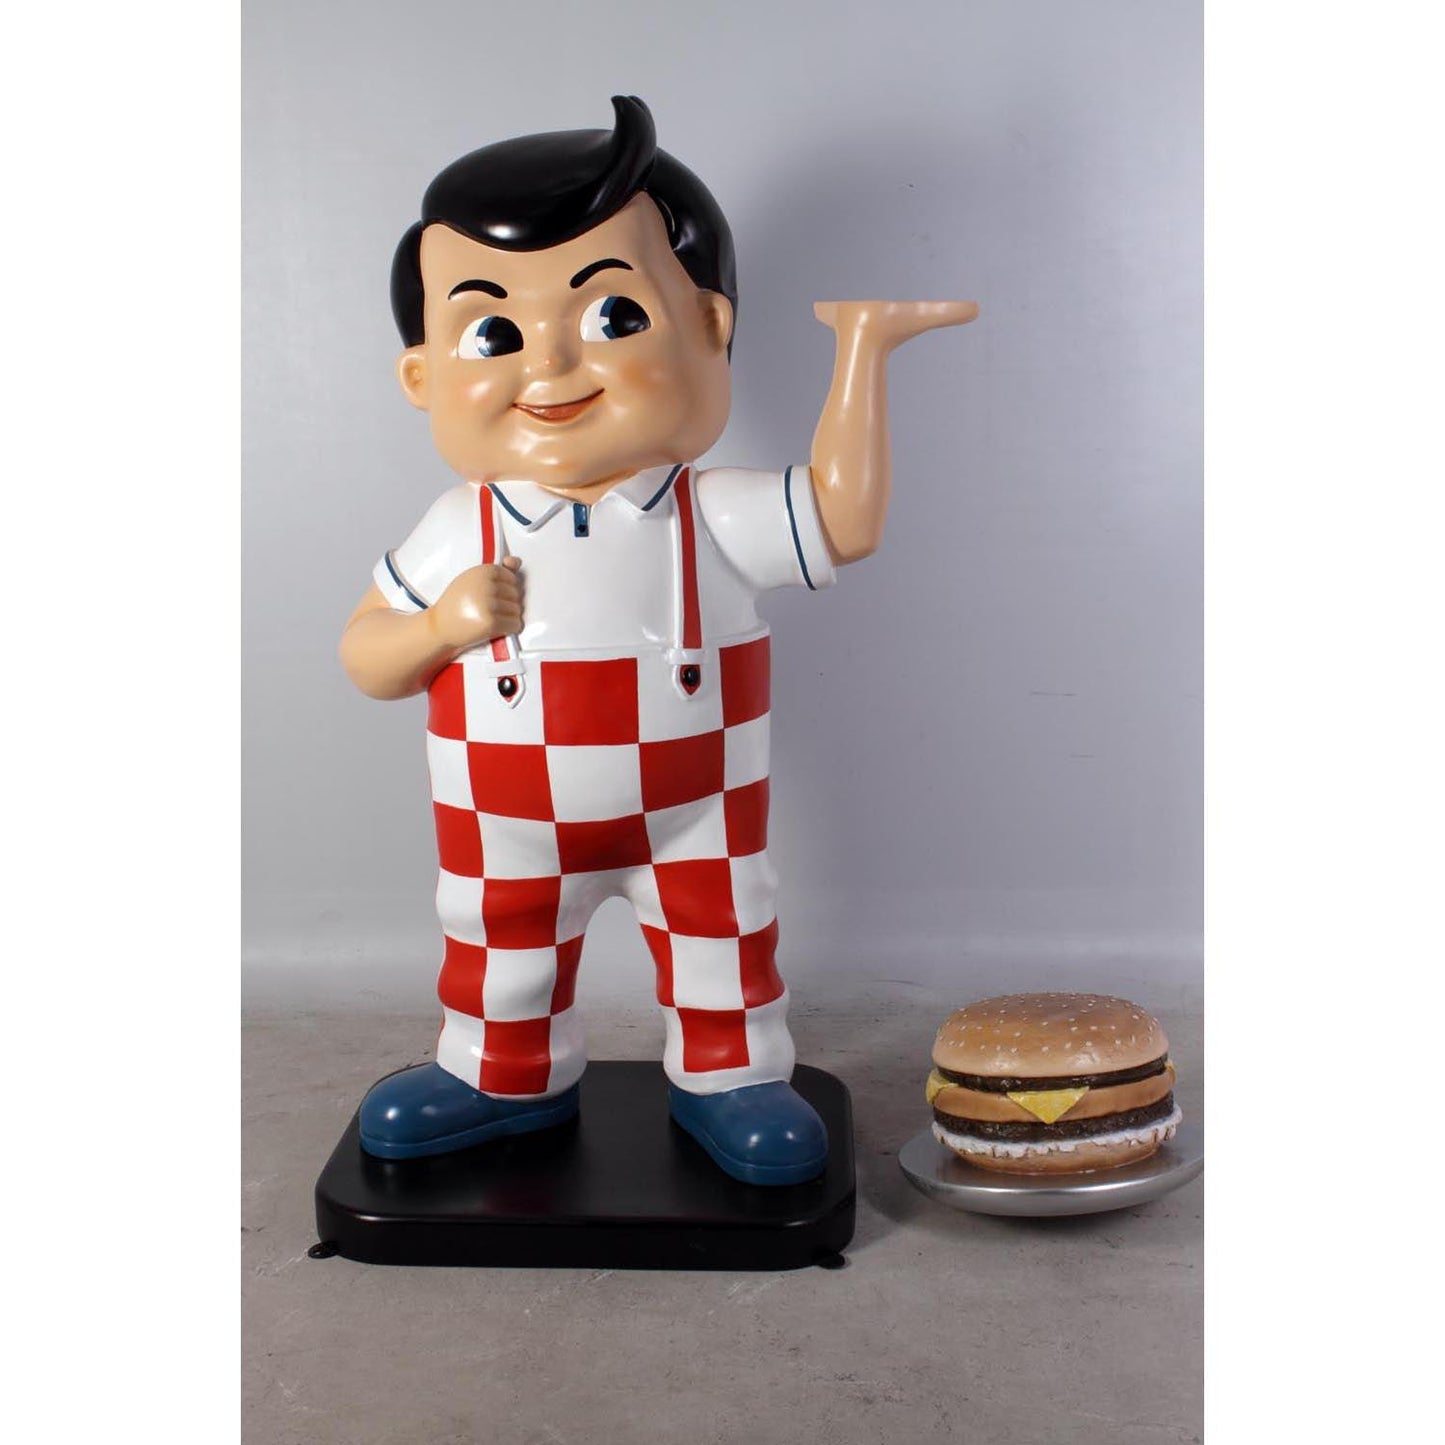 Boy With Hamburger Statue - LM Treasures Prop Rentals 